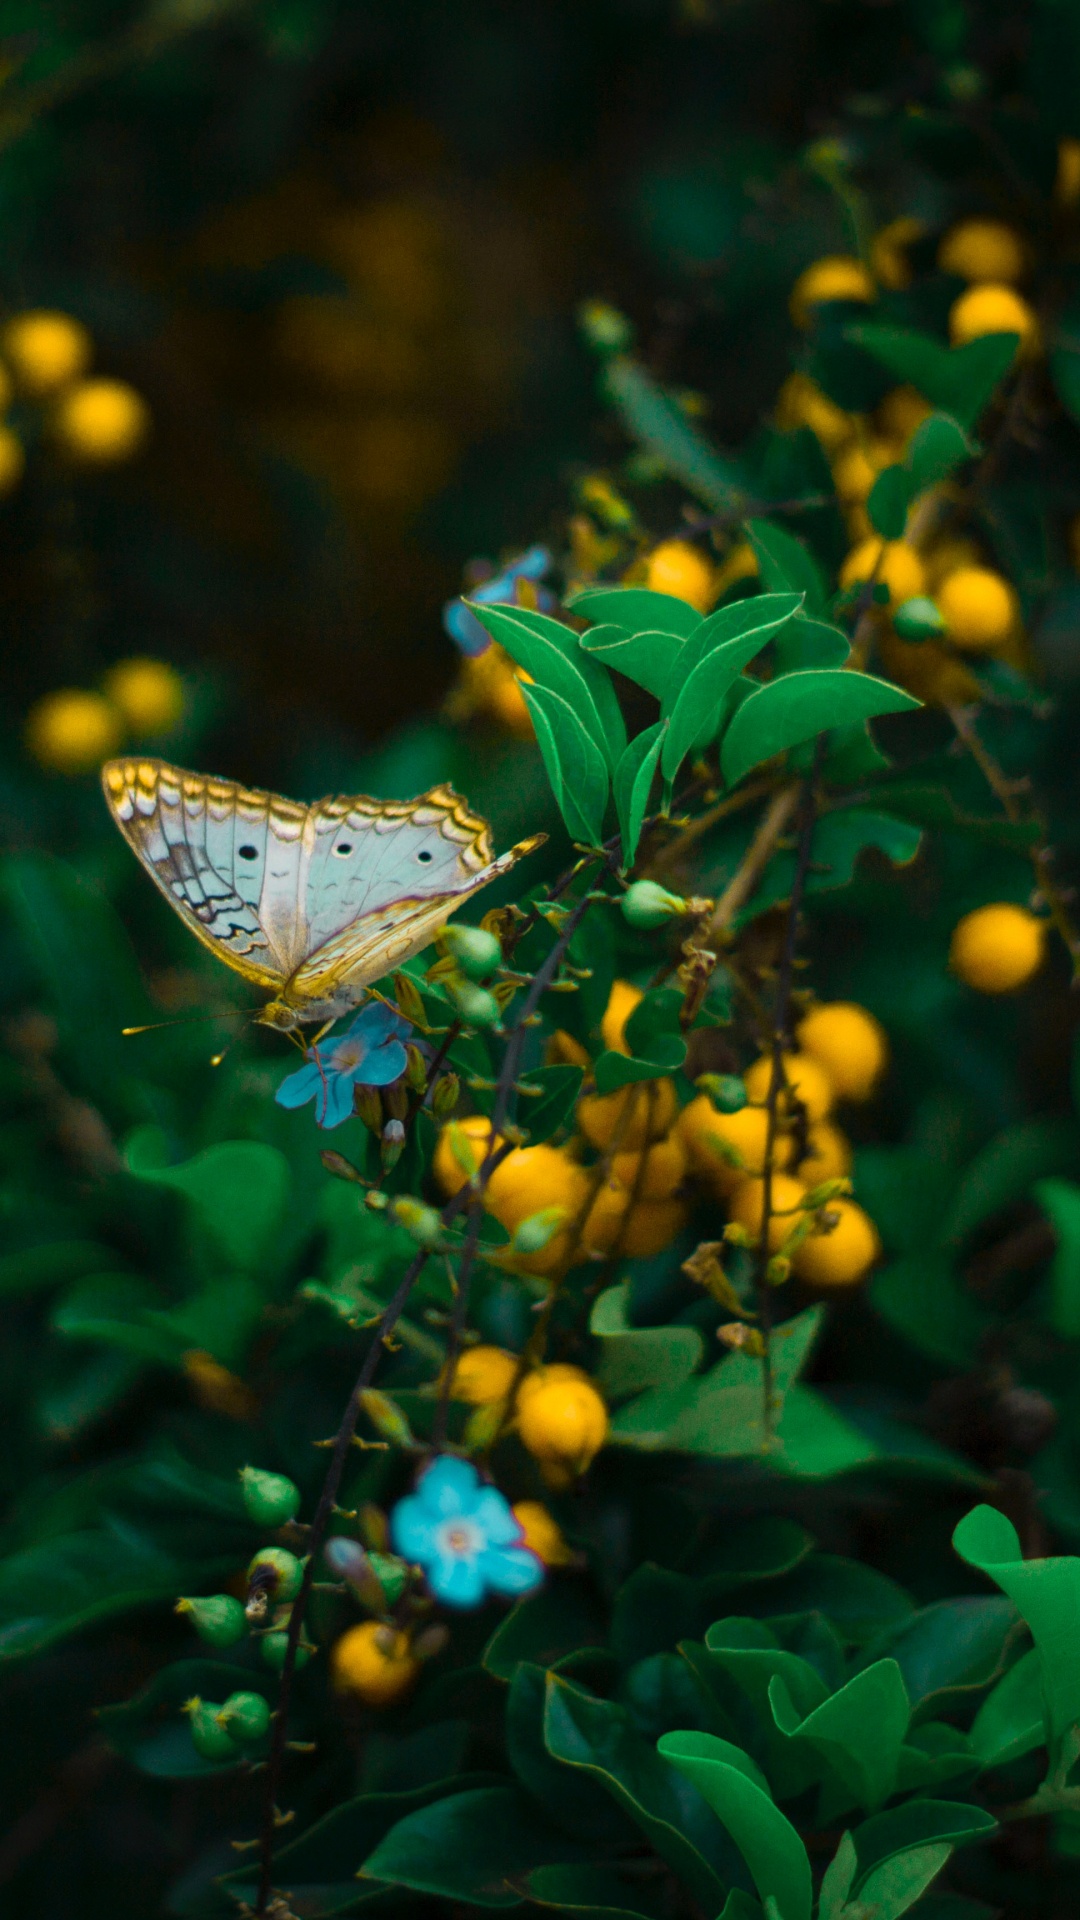 辛西娅亚属, 绿色的, 昆虫, 飞蛾和蝴蝶, 黄色的 壁纸 1080x1920 允许